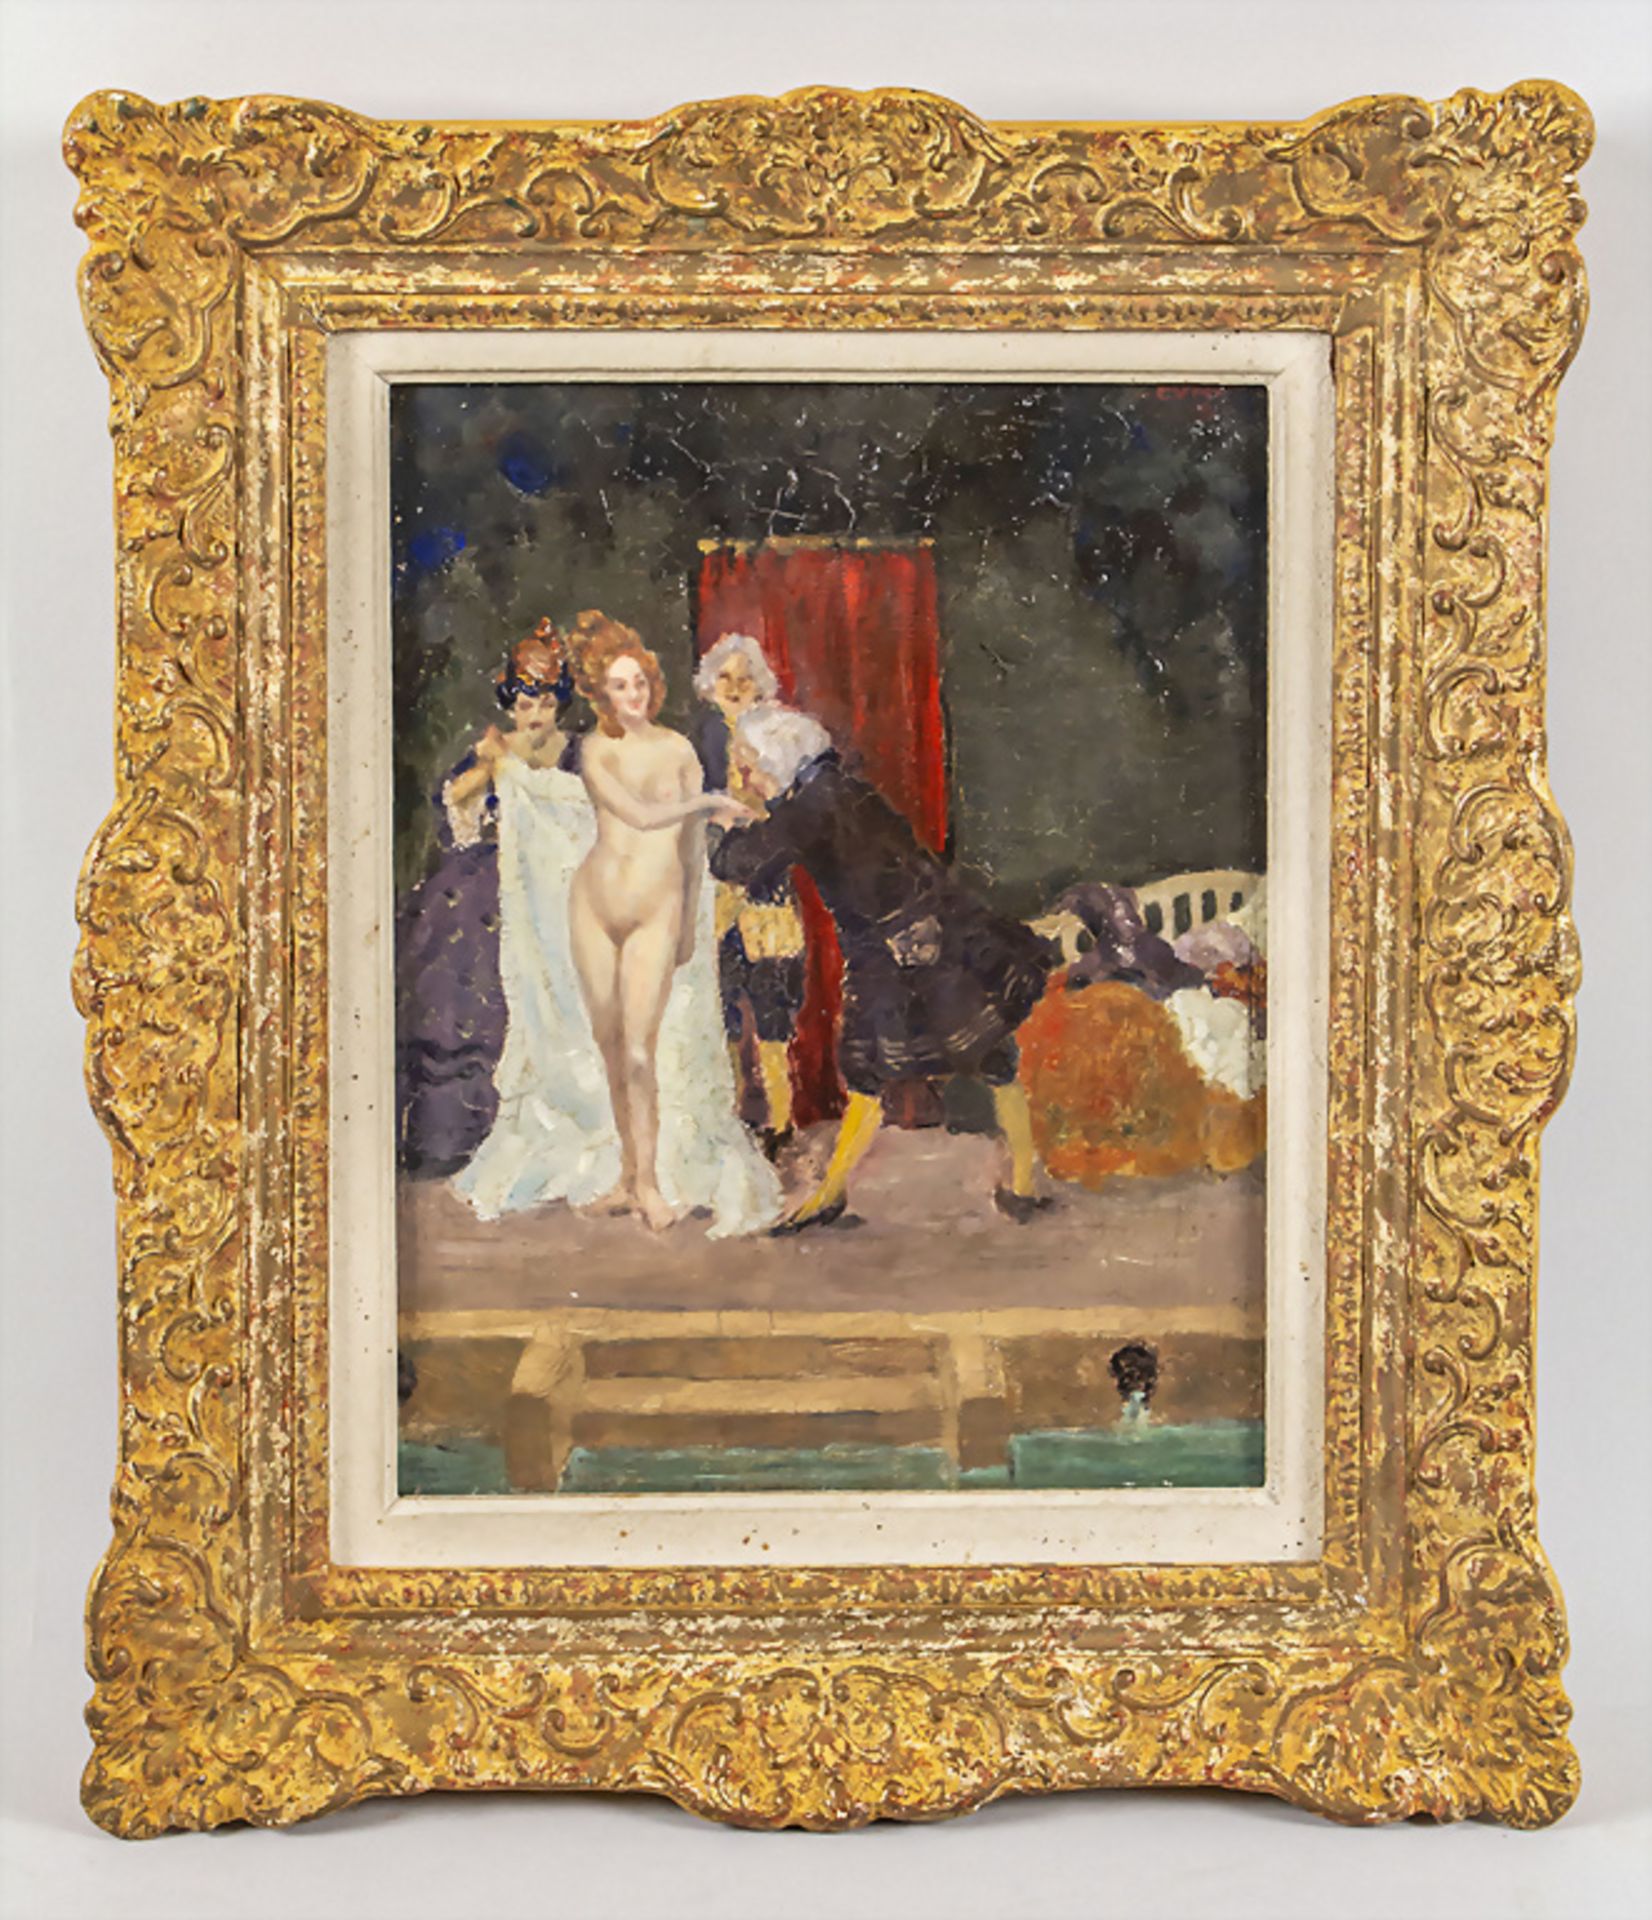 Cuno AMIET (1868-1961), 'Vor dem Bade' / 'Before the bath', 1908 - Bild 2 aus 3